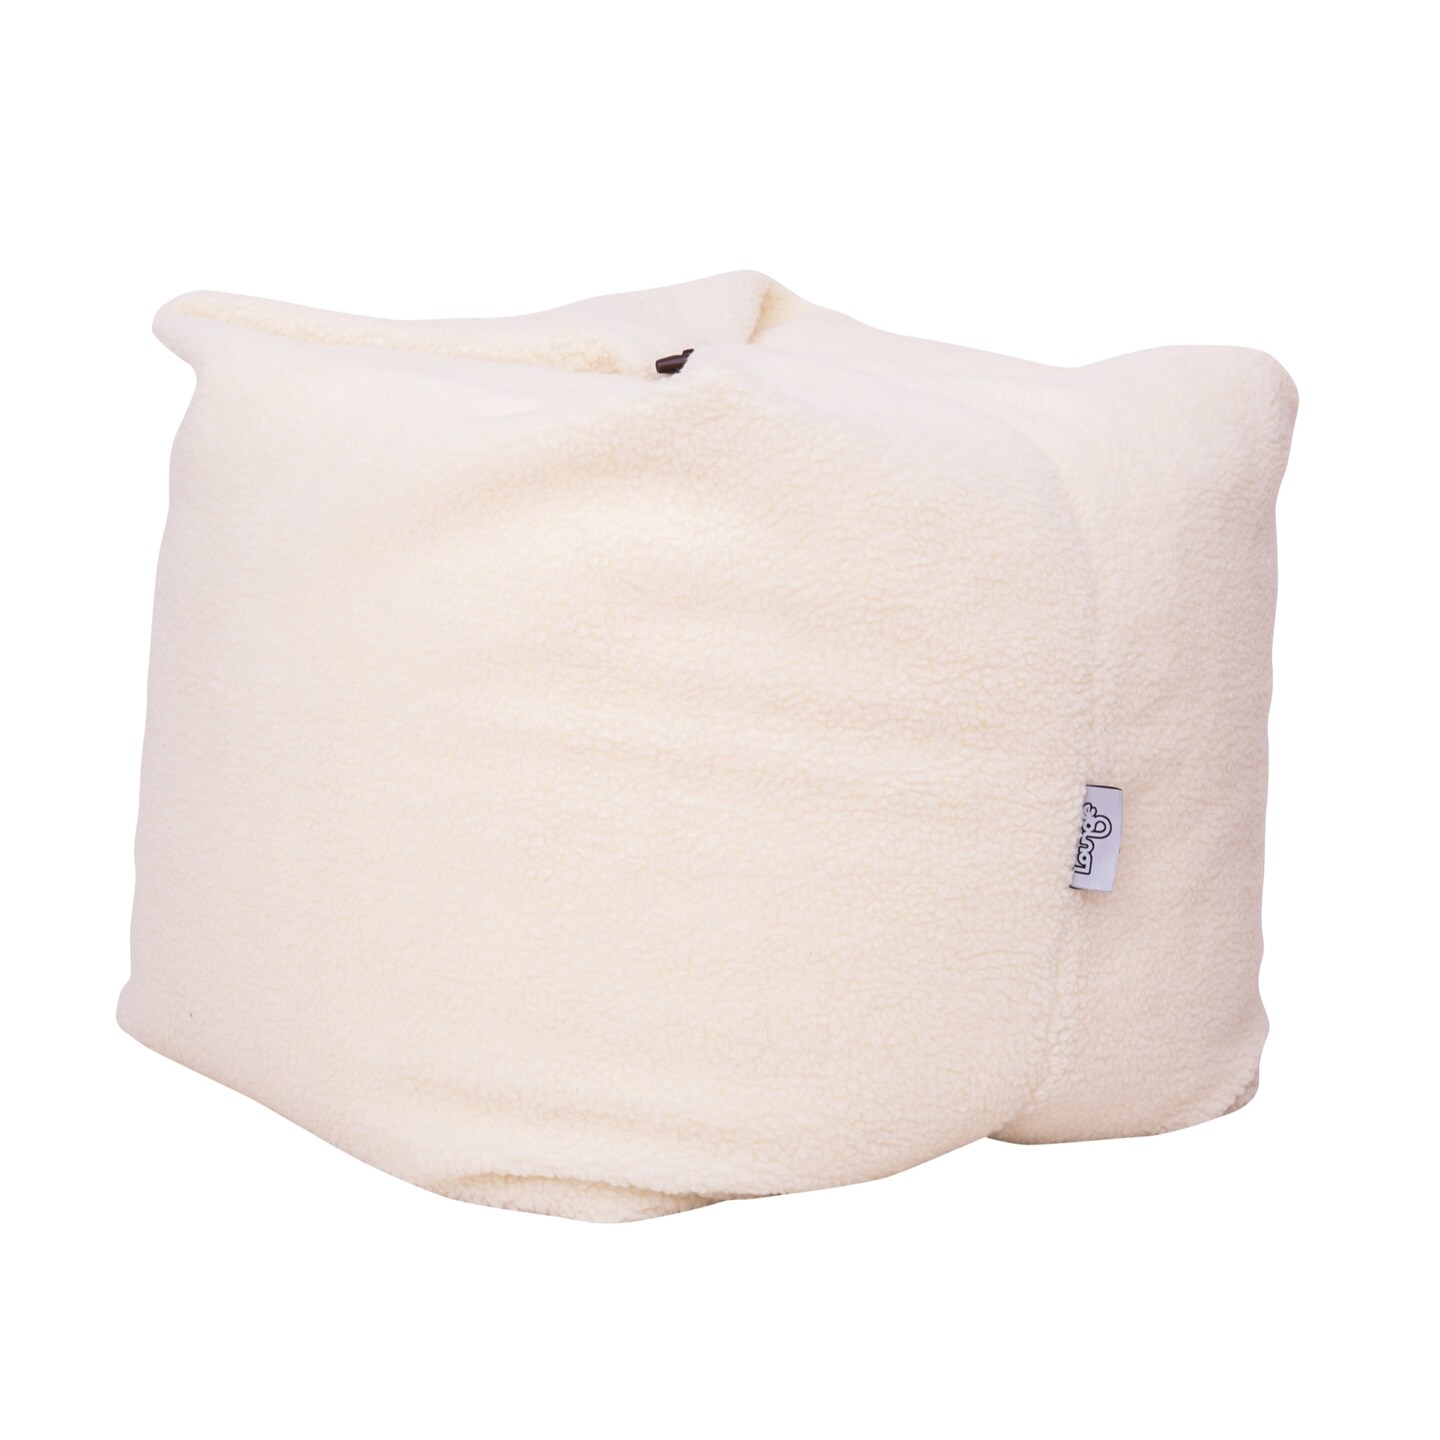 Magic Pouf Linen Bean Bag Chair/Ottoman/Floor Pillow 3-in-1